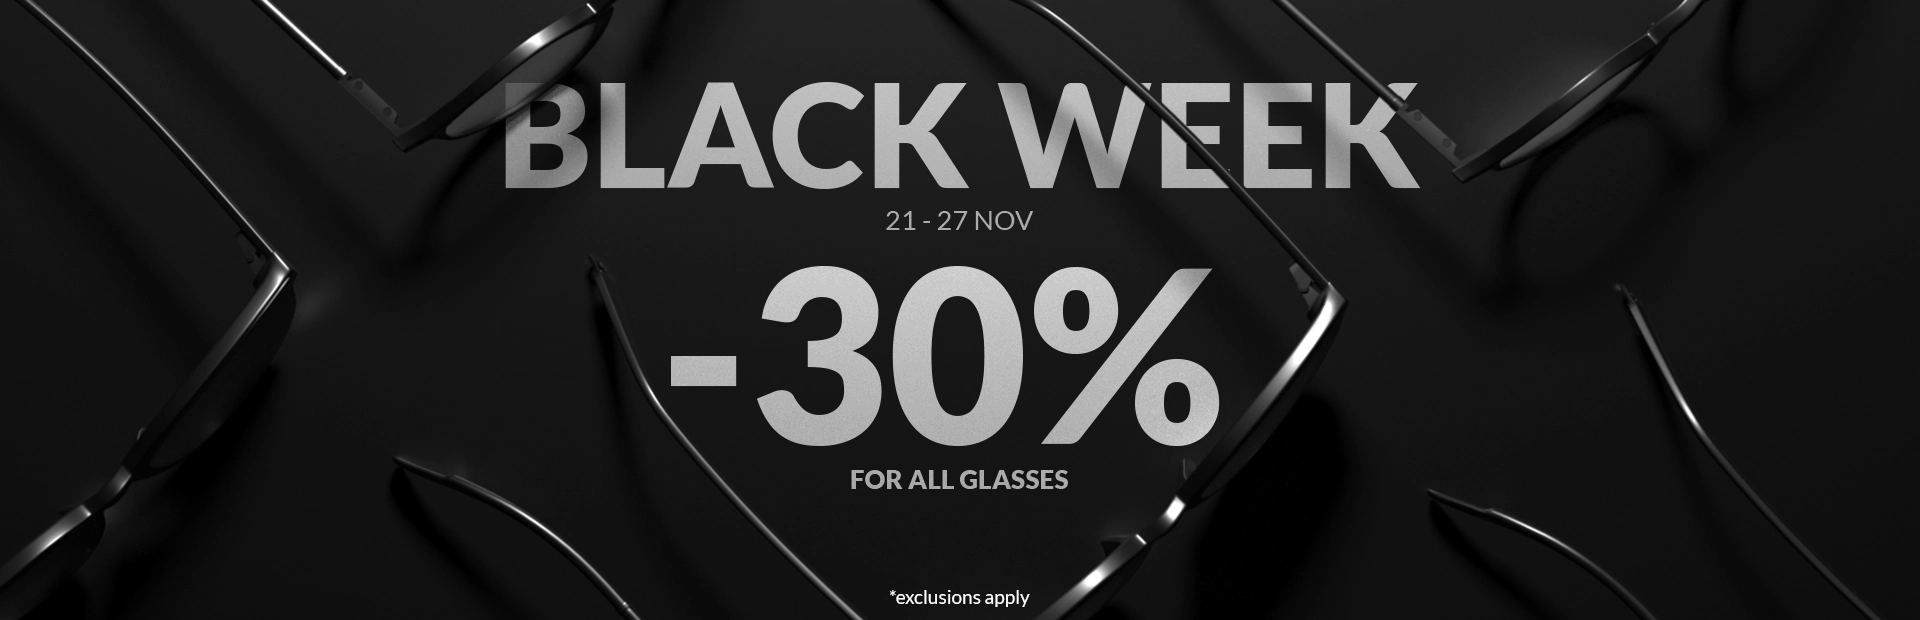 Black Week -30% OFF